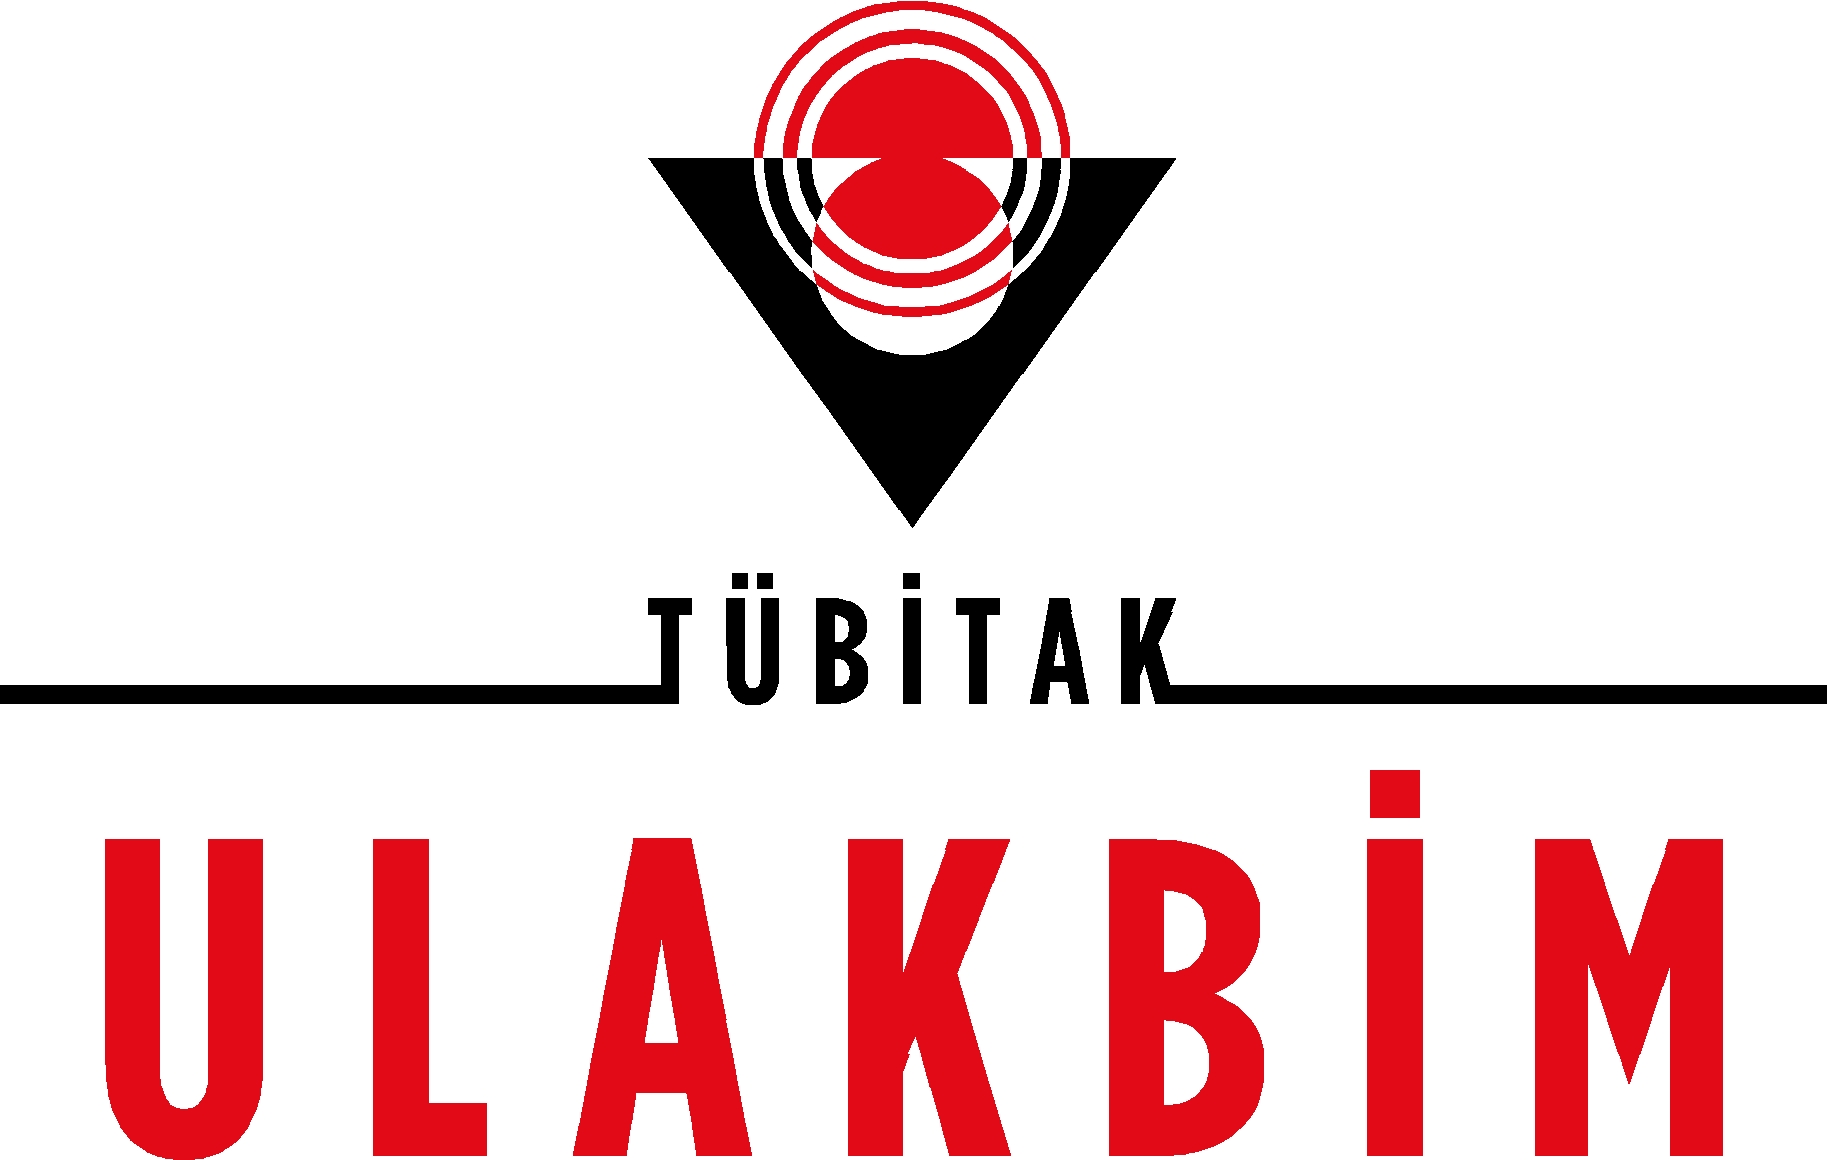 TUB-TAK-ULAKB-M-Logo-JPG.jpg